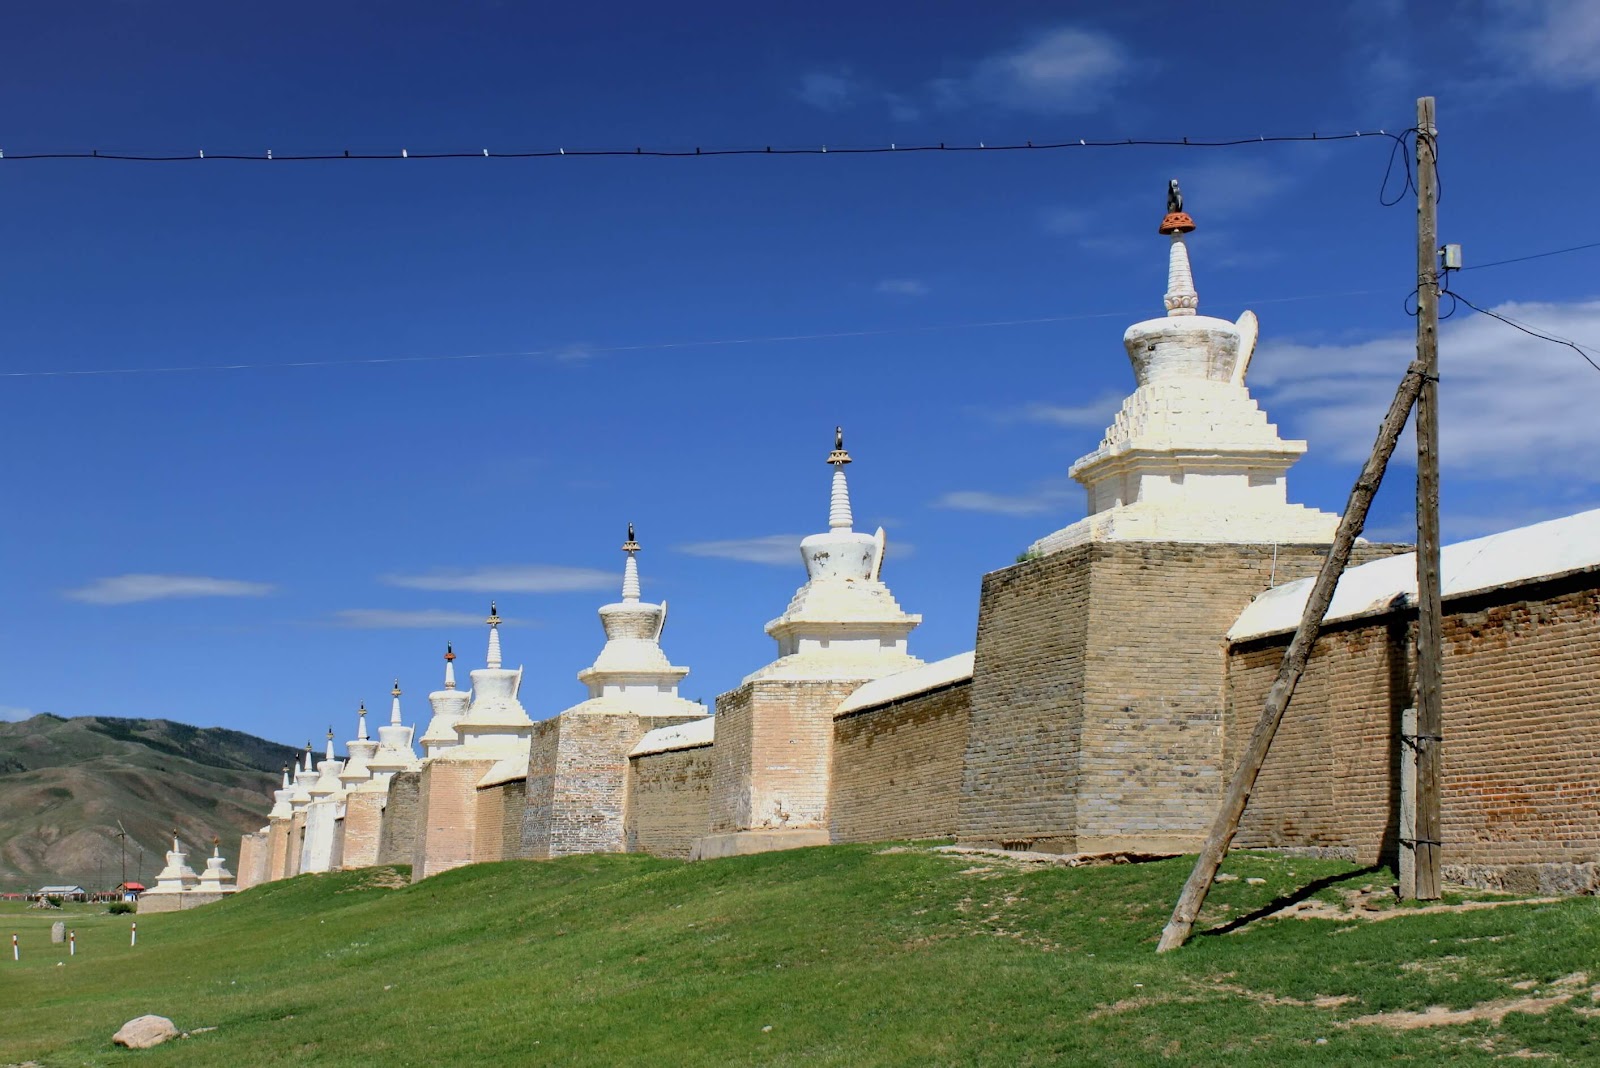 erdene zuu stupa walls, Mongolia, famous landmarks in Mongolia